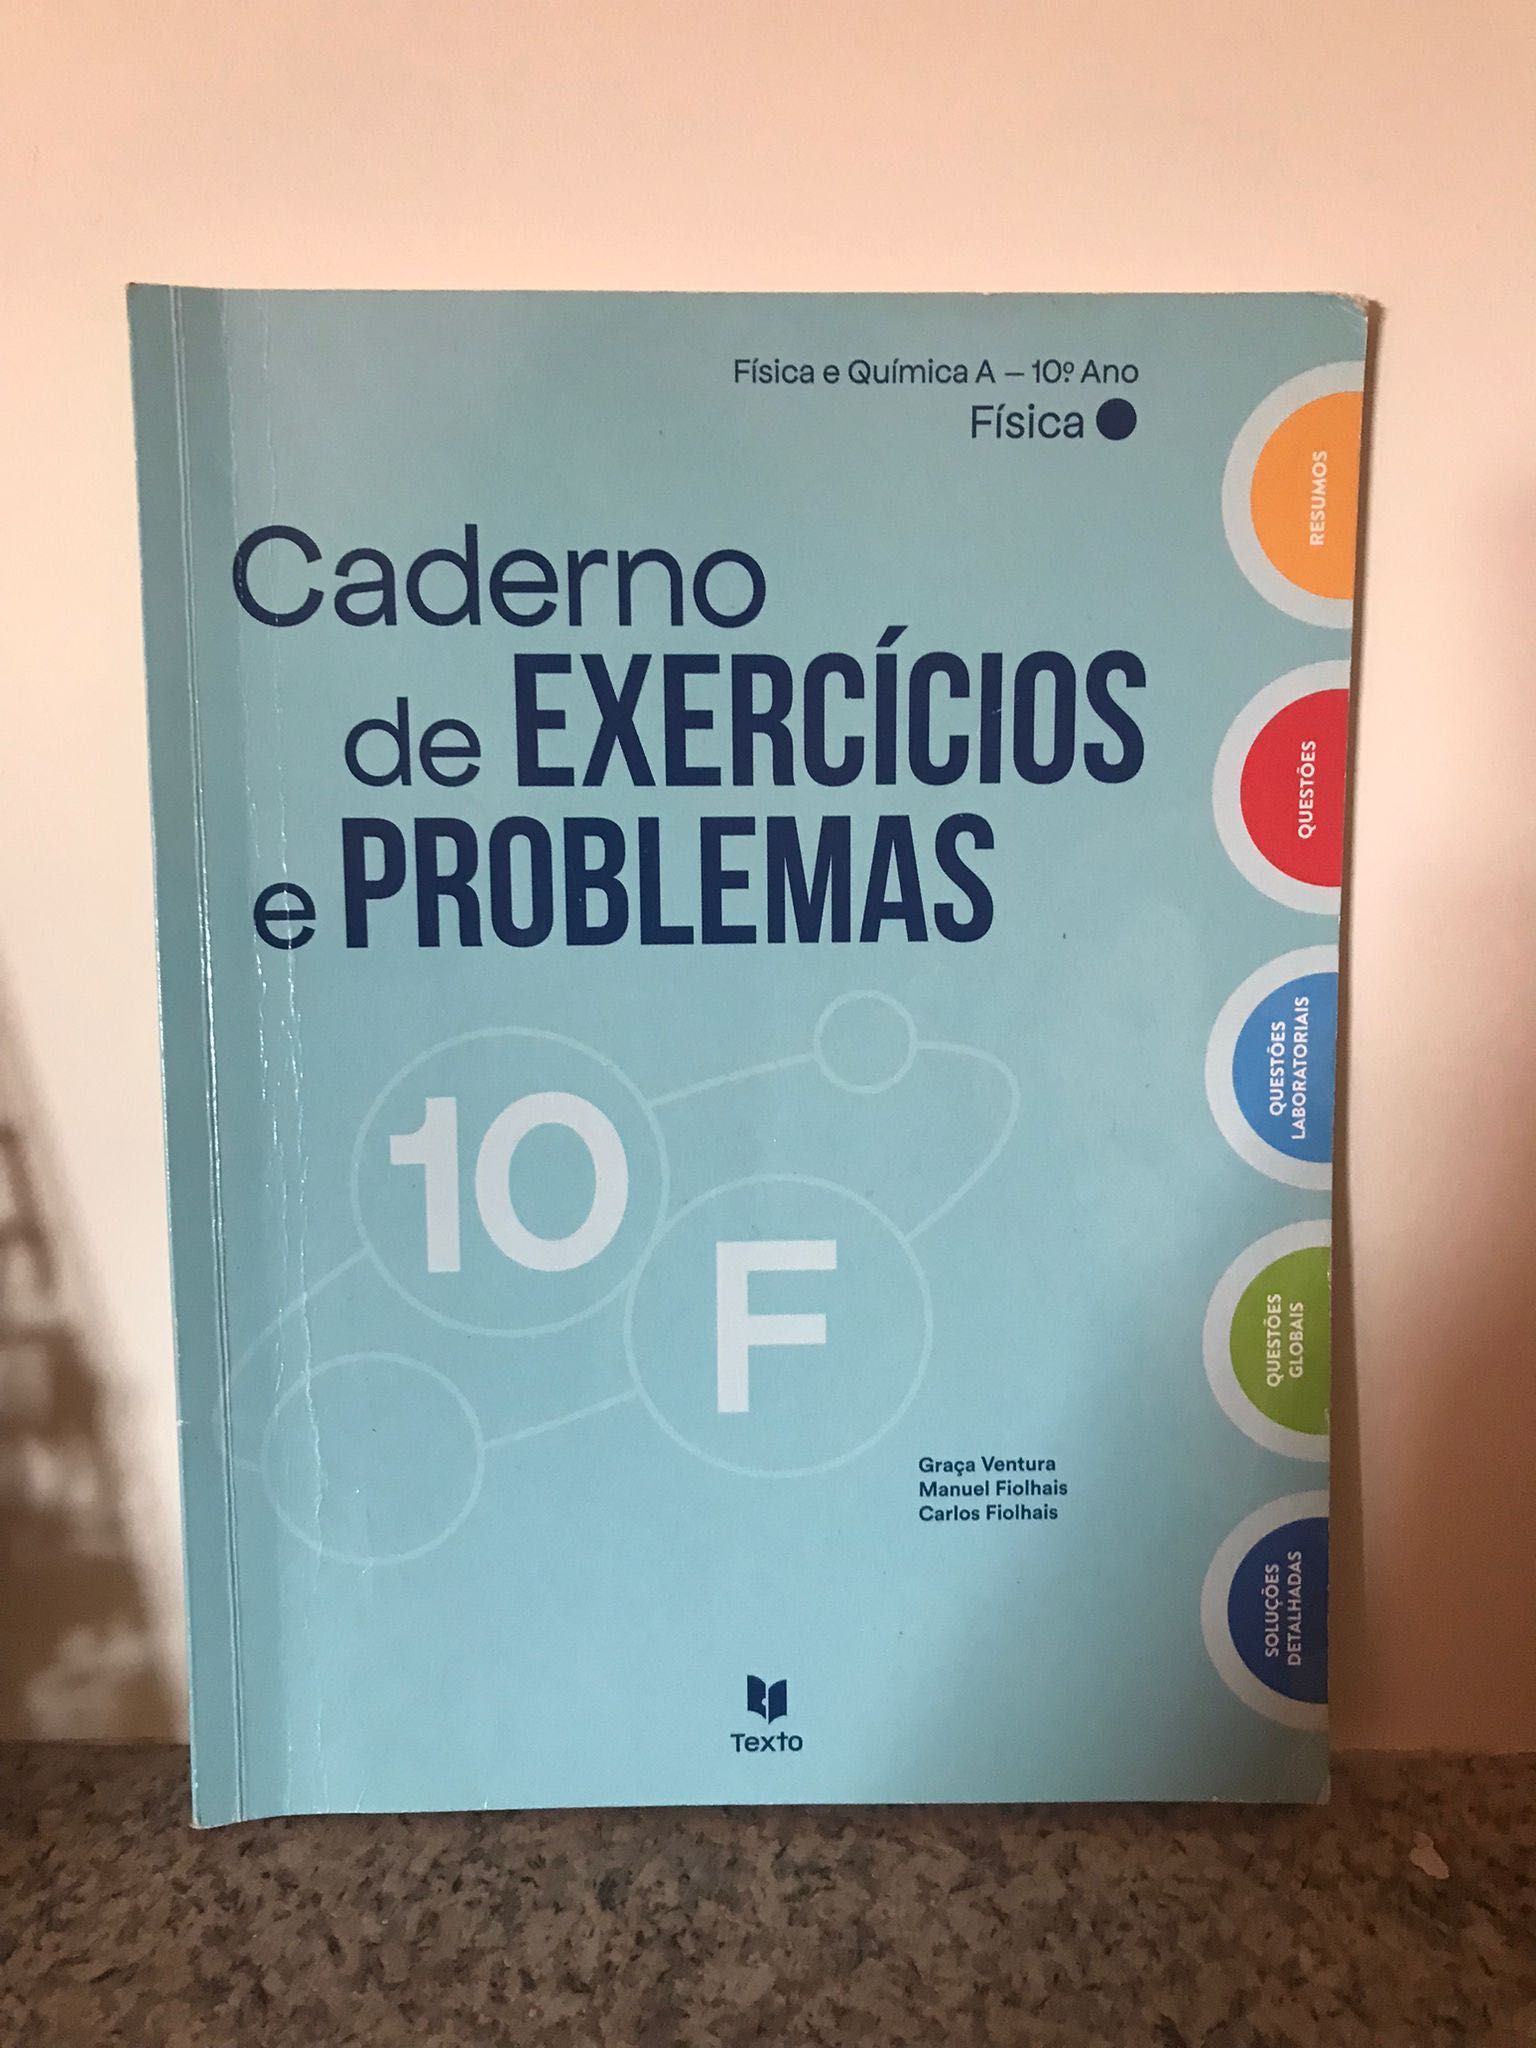 Caderno de exercícios e problemas - 10 F - Física e Química A